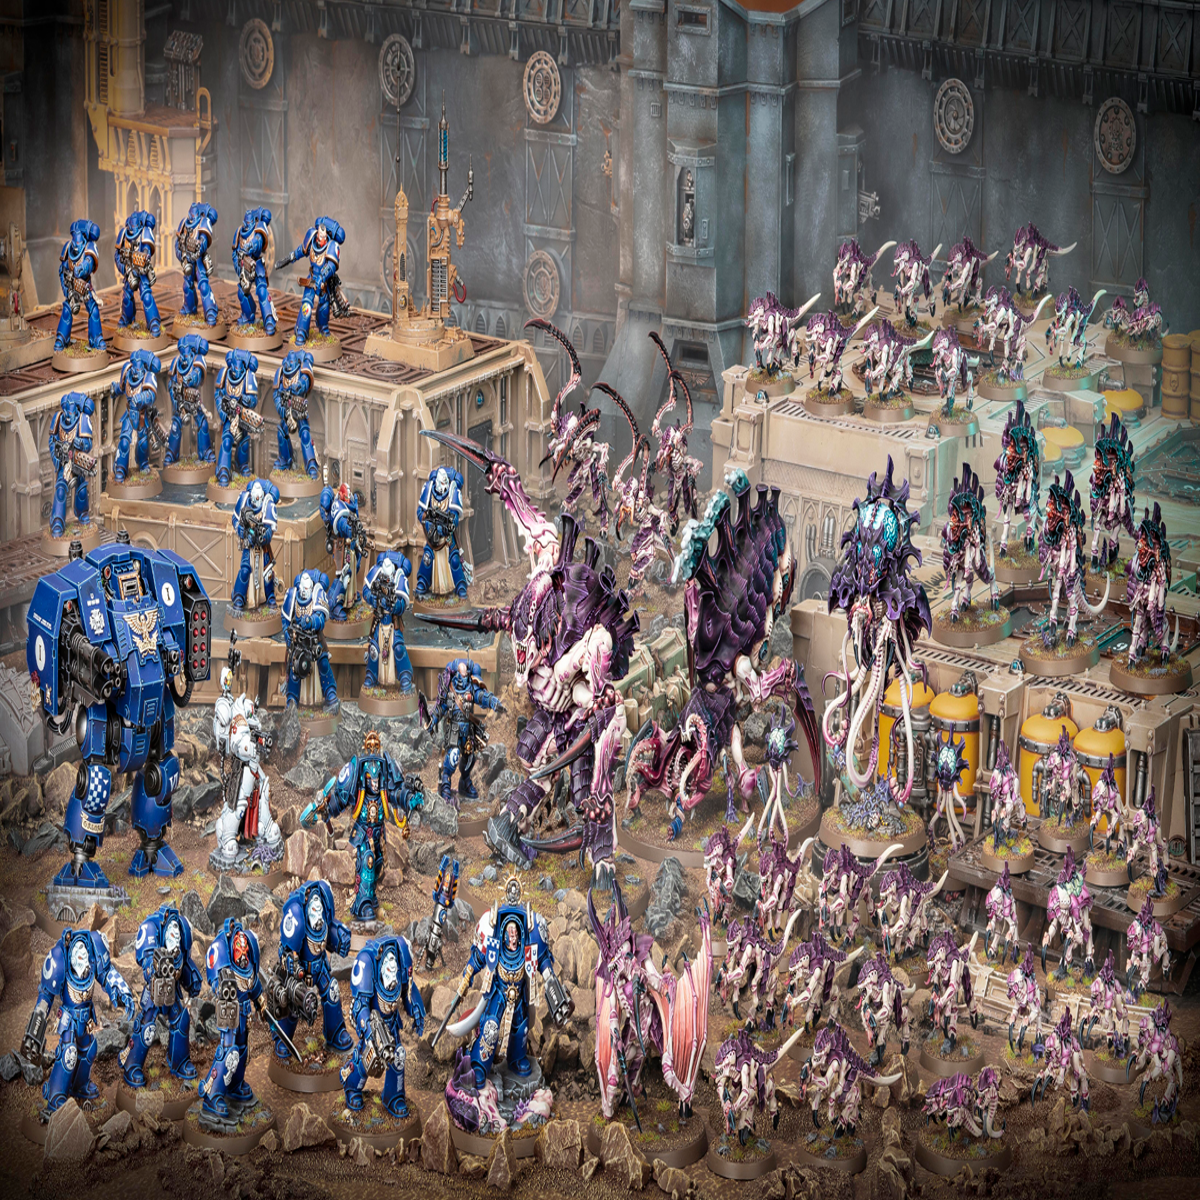 Games Workshop Warhammer 40K, Ultimate Starter Set Mini-Figures